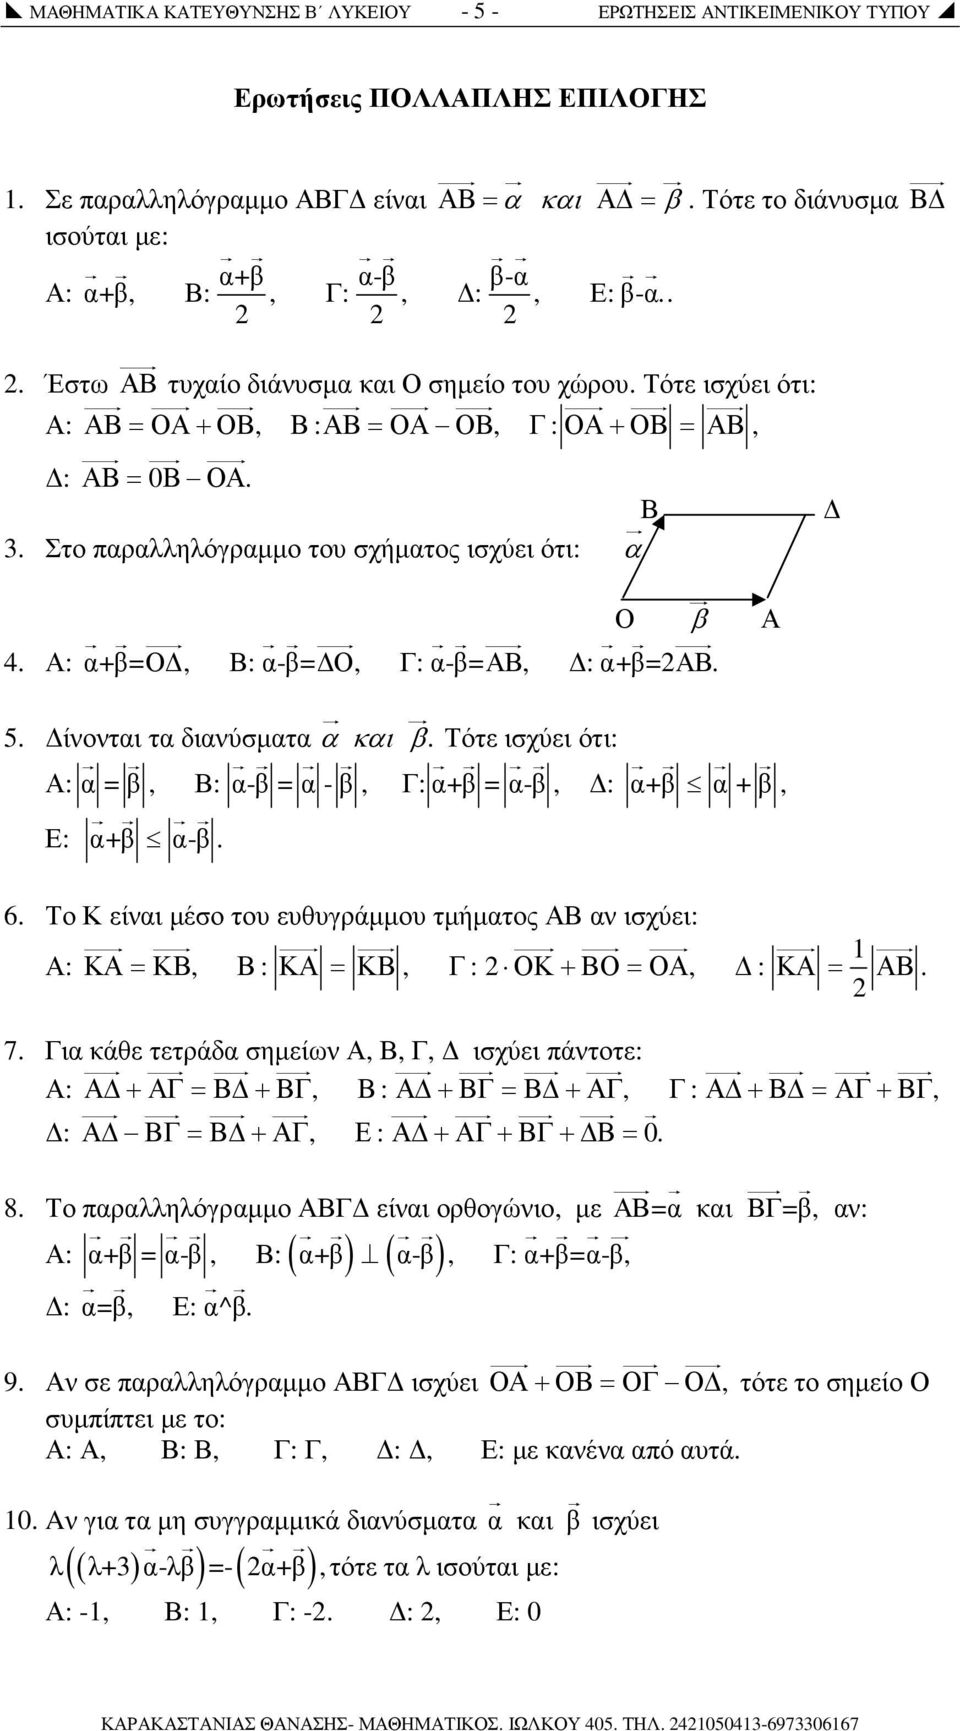 Στο παραλληλόγραµµο του σχήµατος ισχύει ότι: α Ο β Α 4. Α: α+β=ο, Β: α-β= Ο, Γ: α-β=αβ, : α+β=αβ. 5. ίνονται τα διανύσµατα α και β.